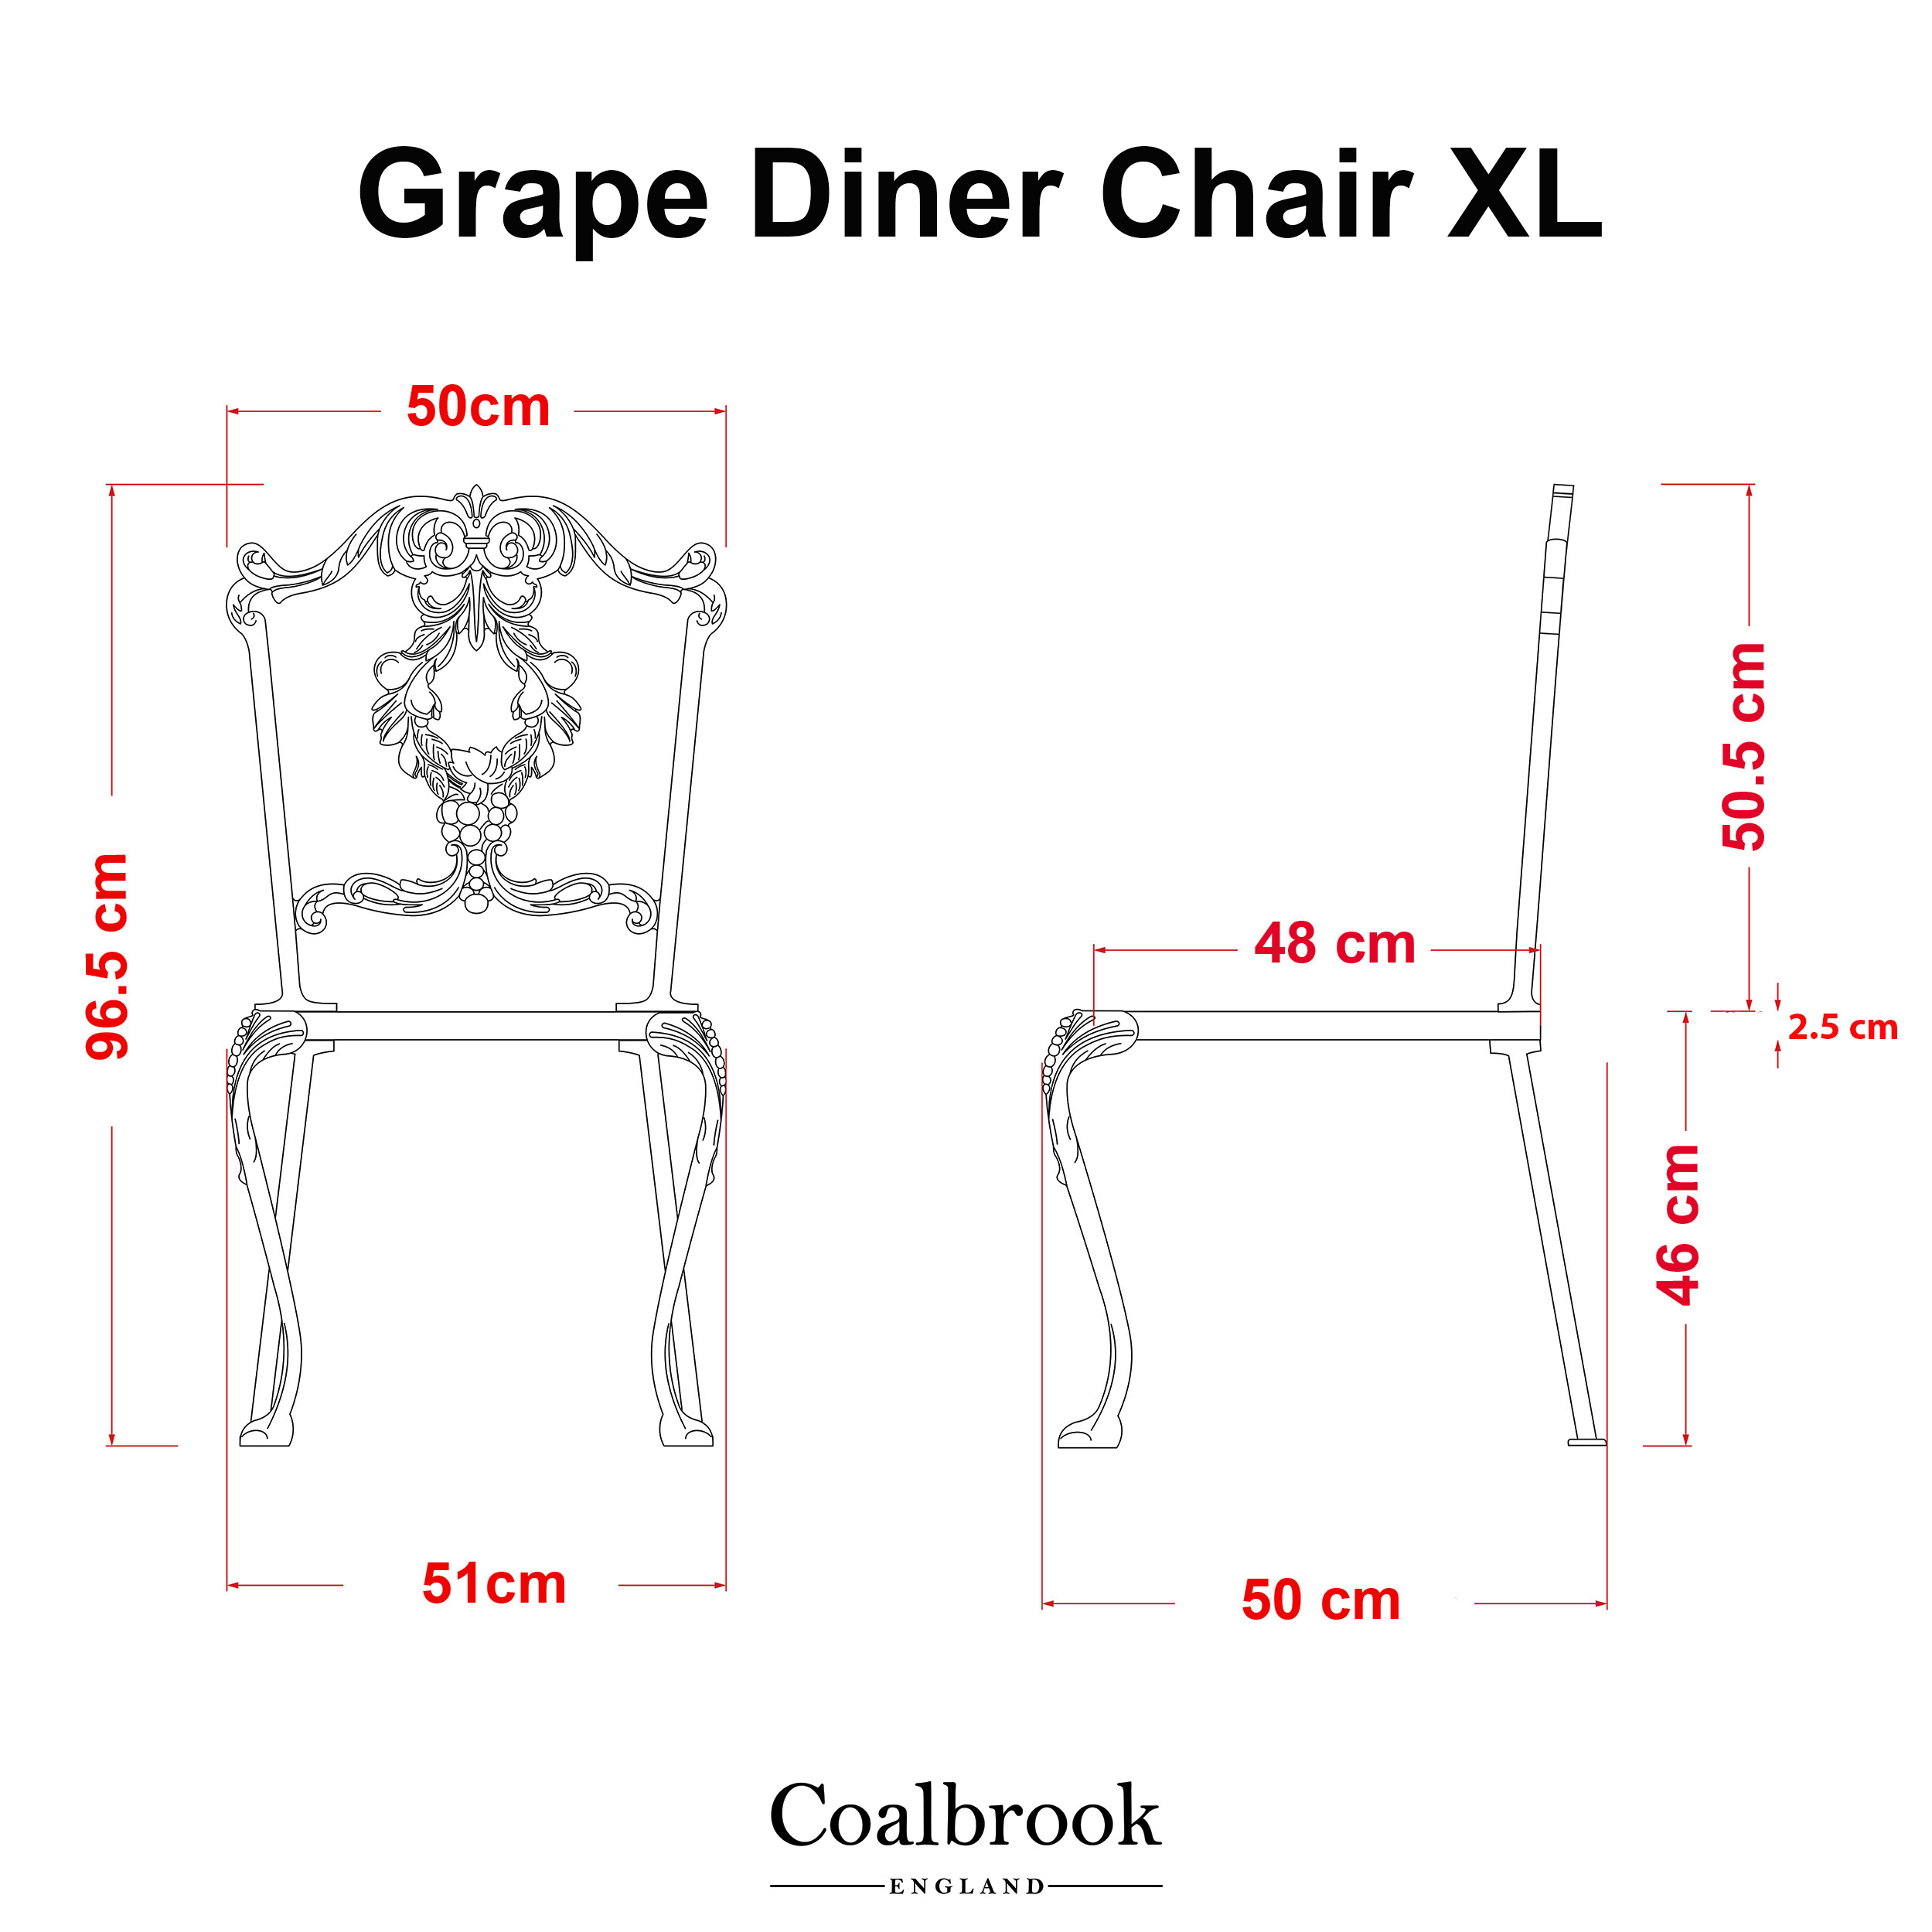 Grape Diner Chair XL Measurements 2023